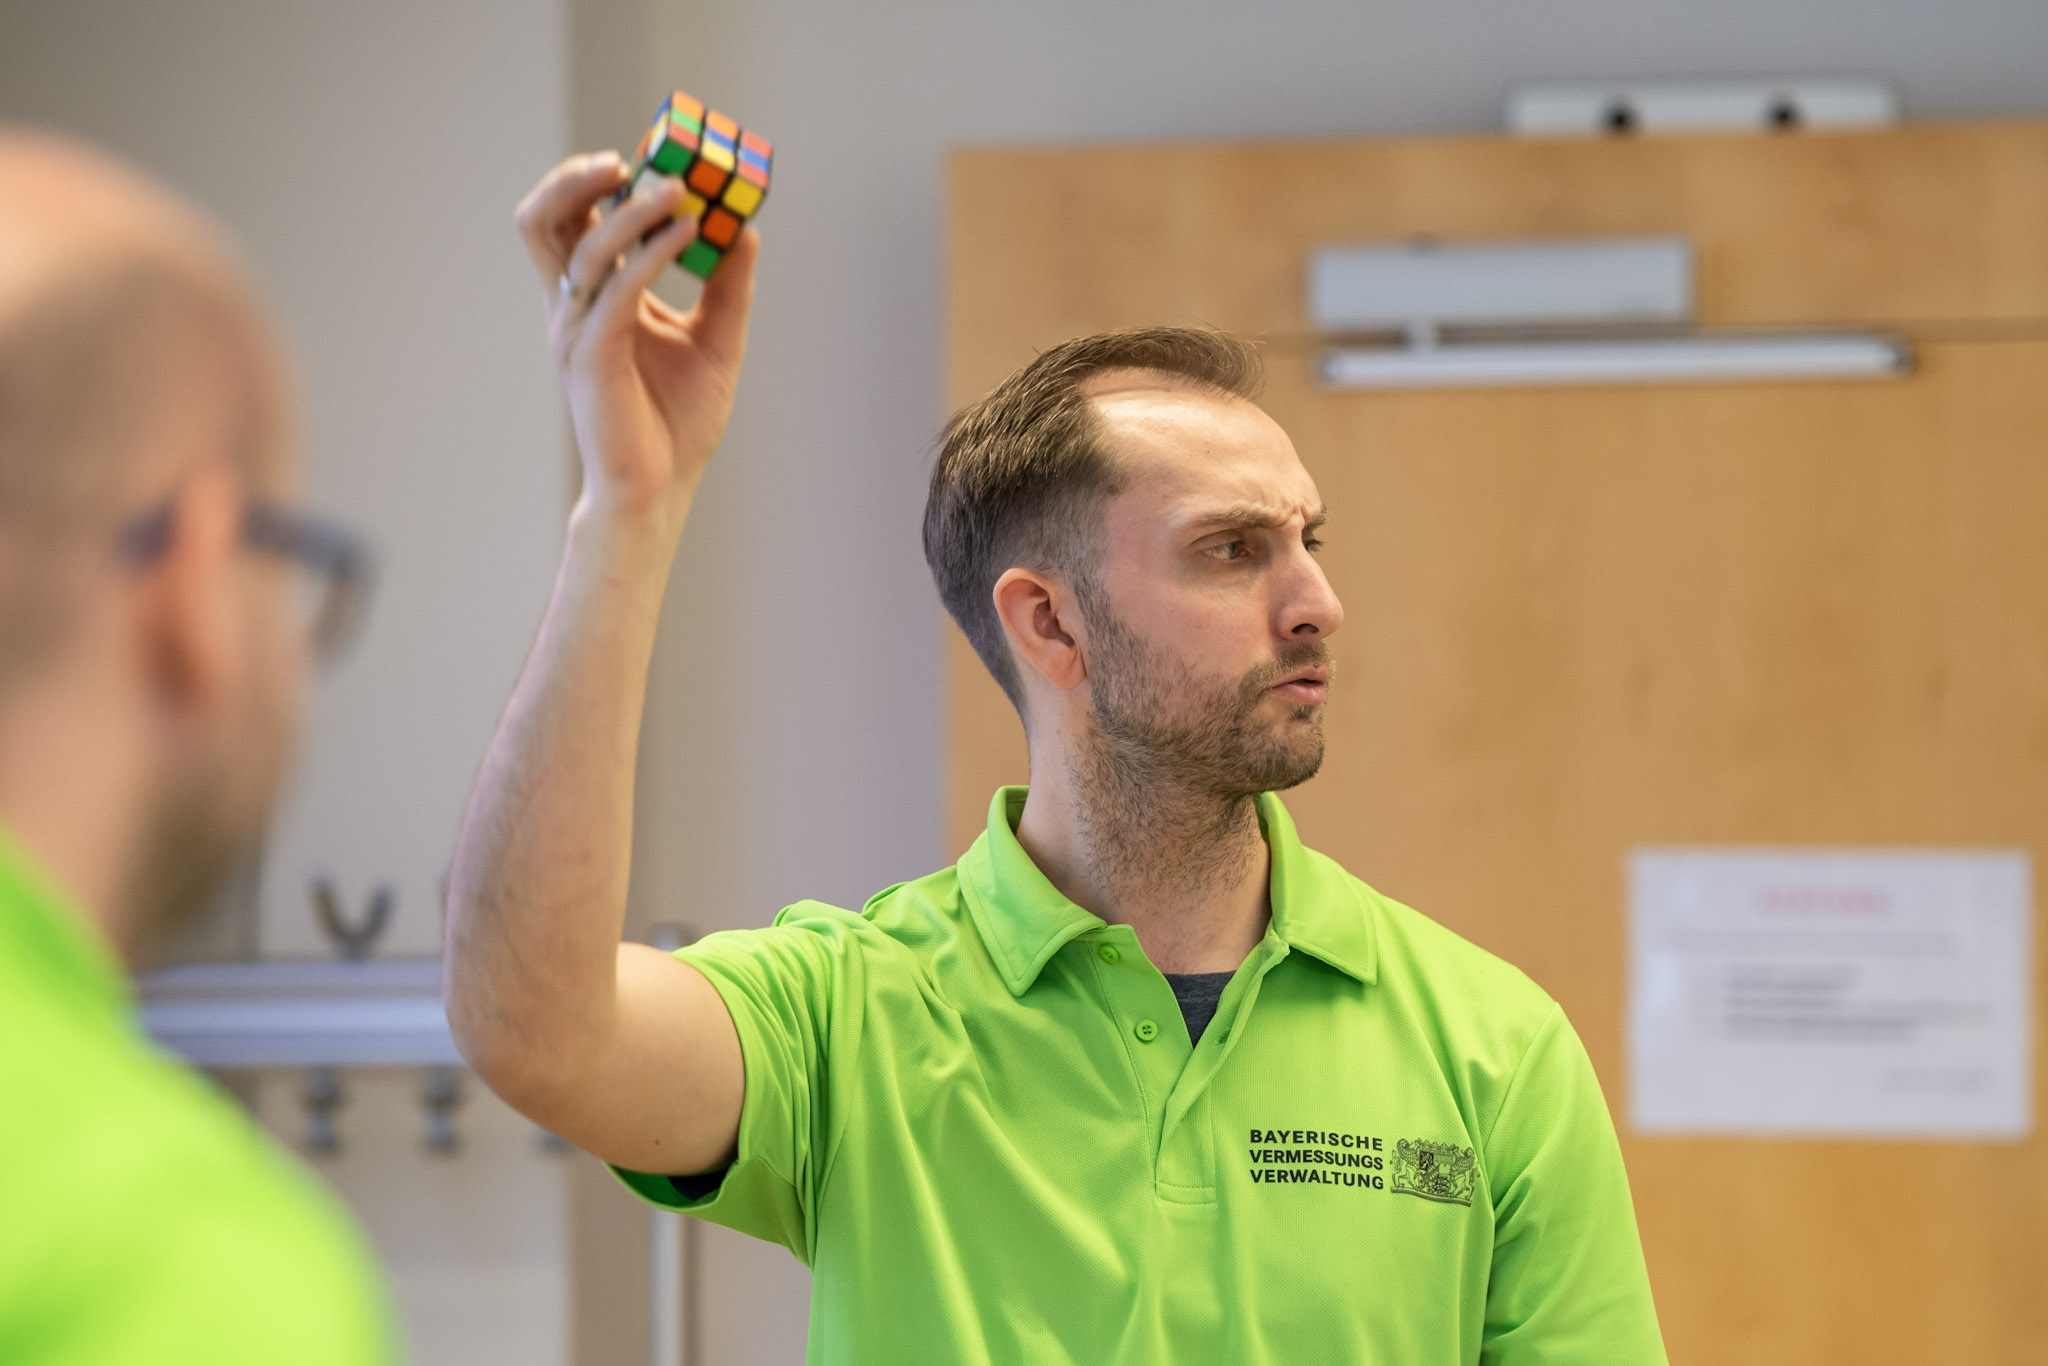 Mitarbeiter Fabian Hein präsentiert den Rubic-Würfel im Programmier-Workshop